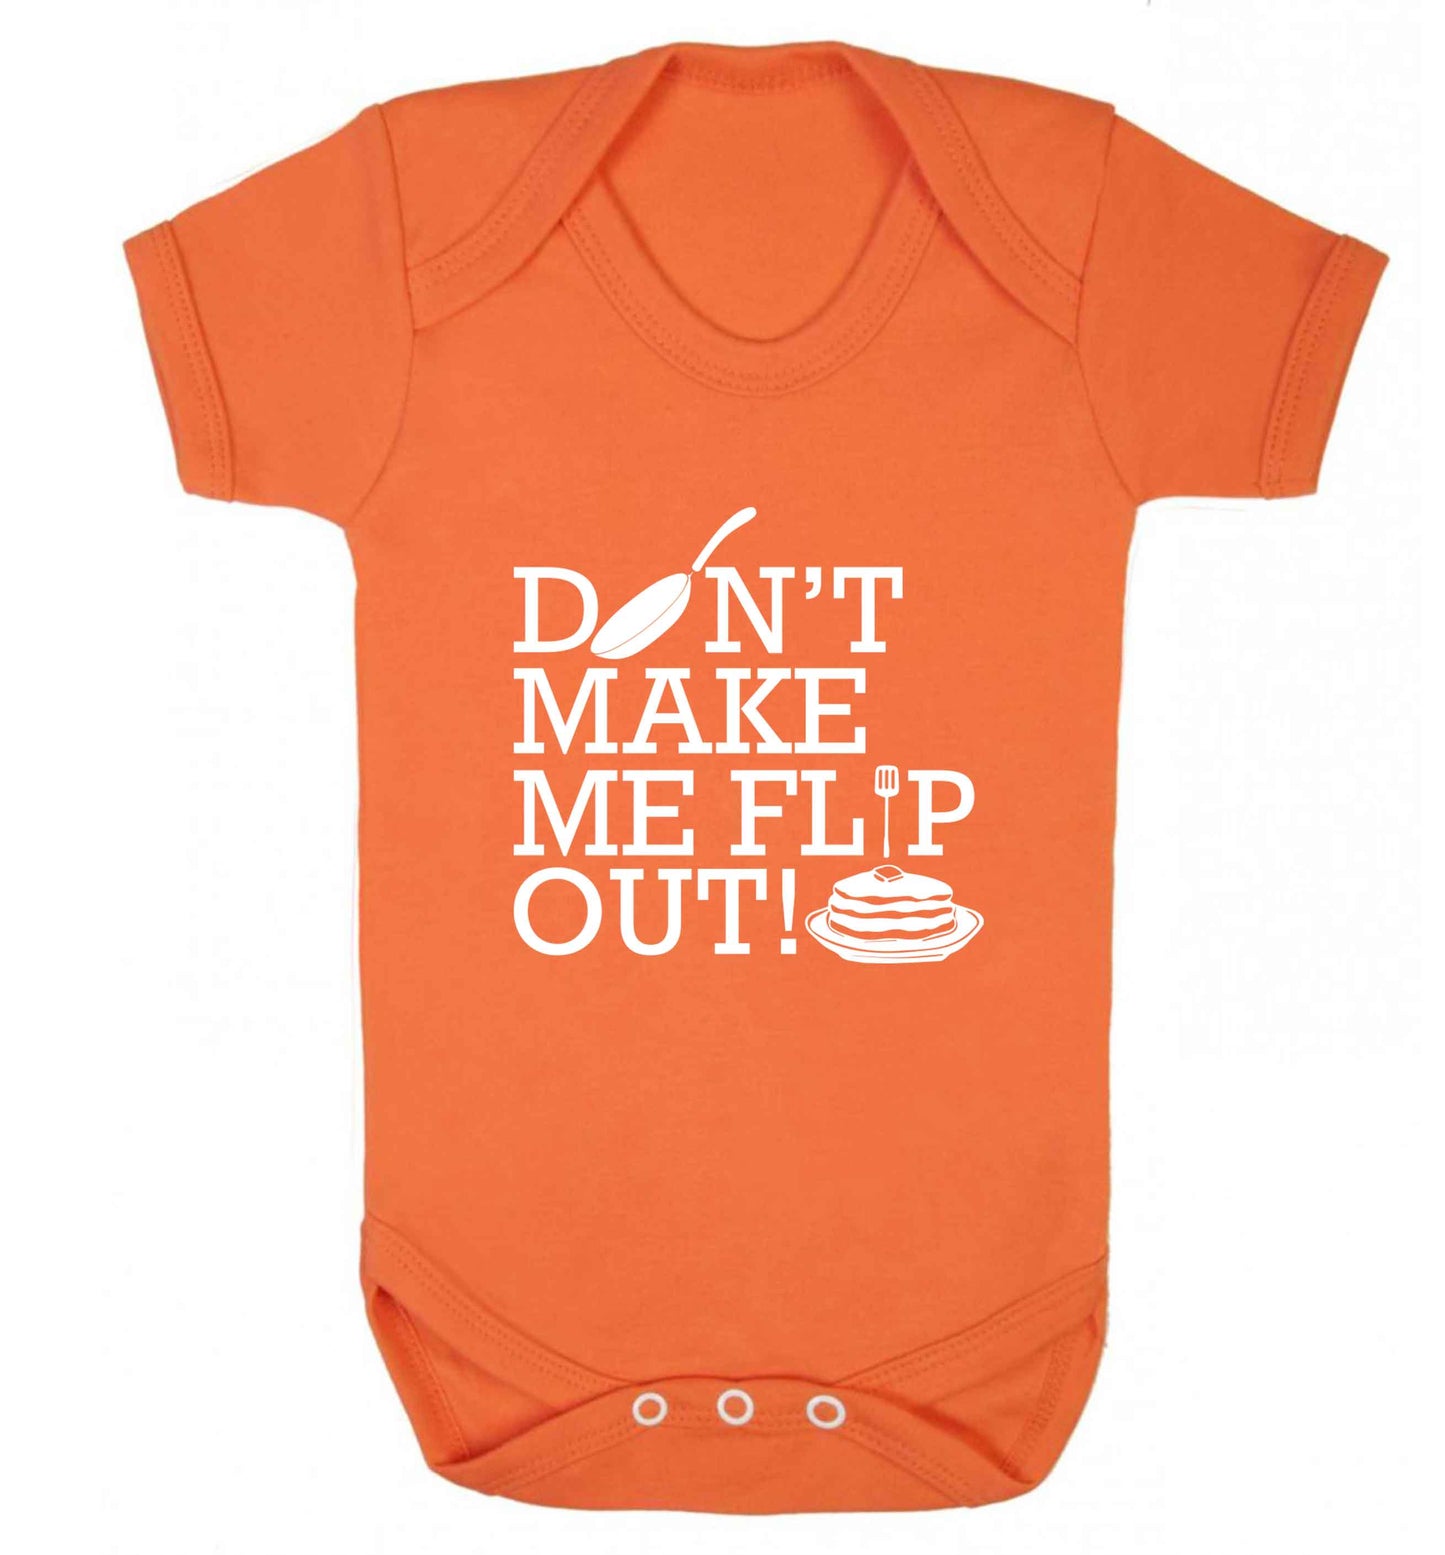 Don't make me flip out baby vest orange 18-24 months